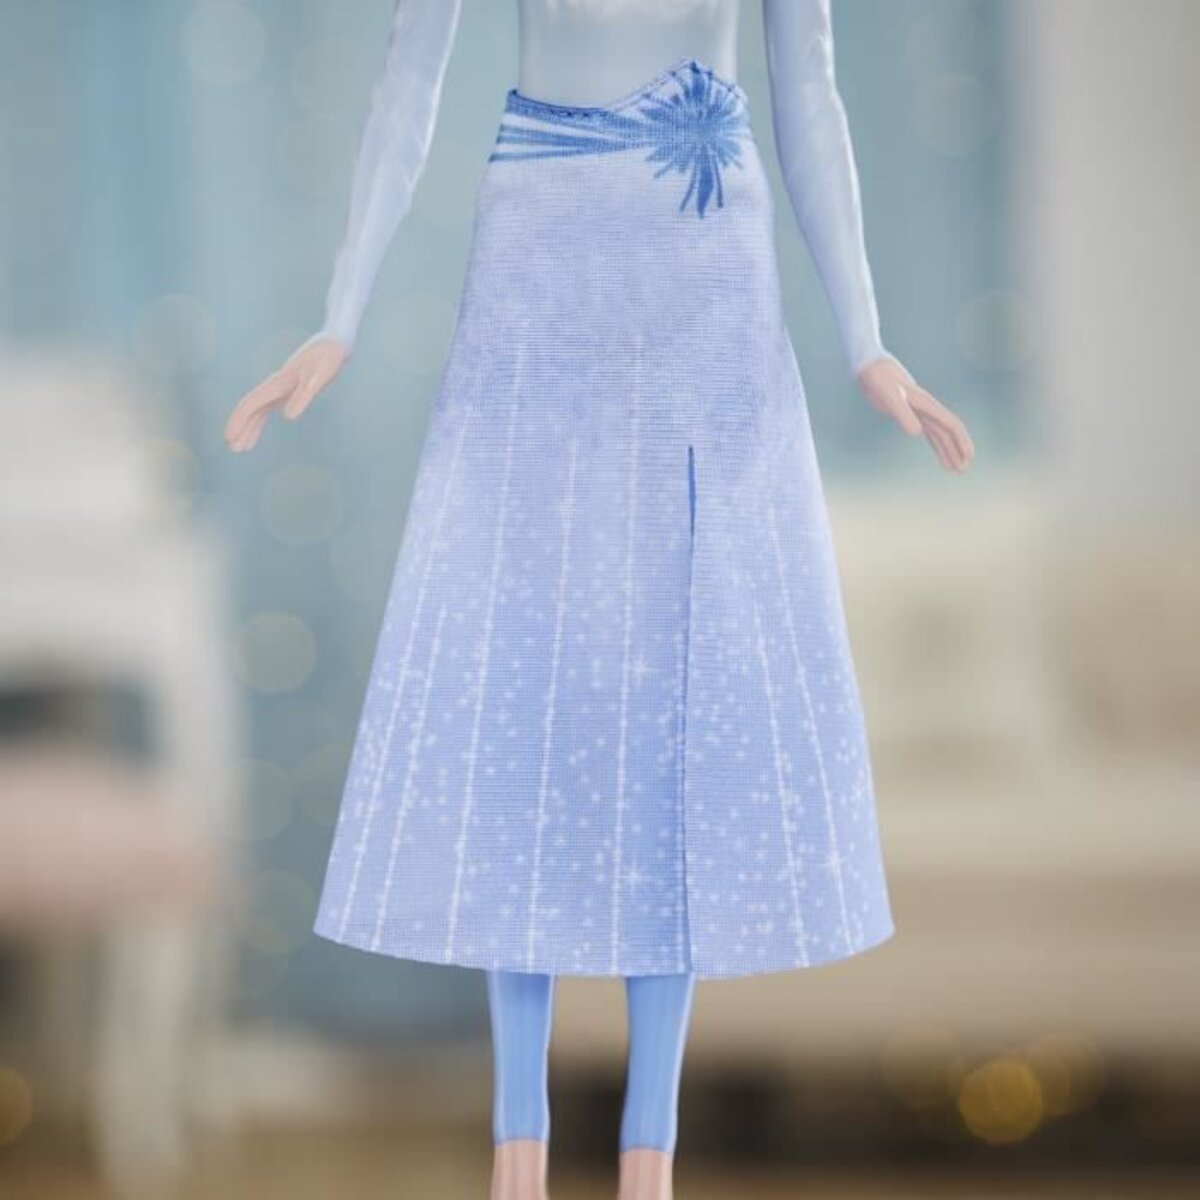 Disney La Reine des neiges 2, poupée Elsa Lumière aquatique, jouet